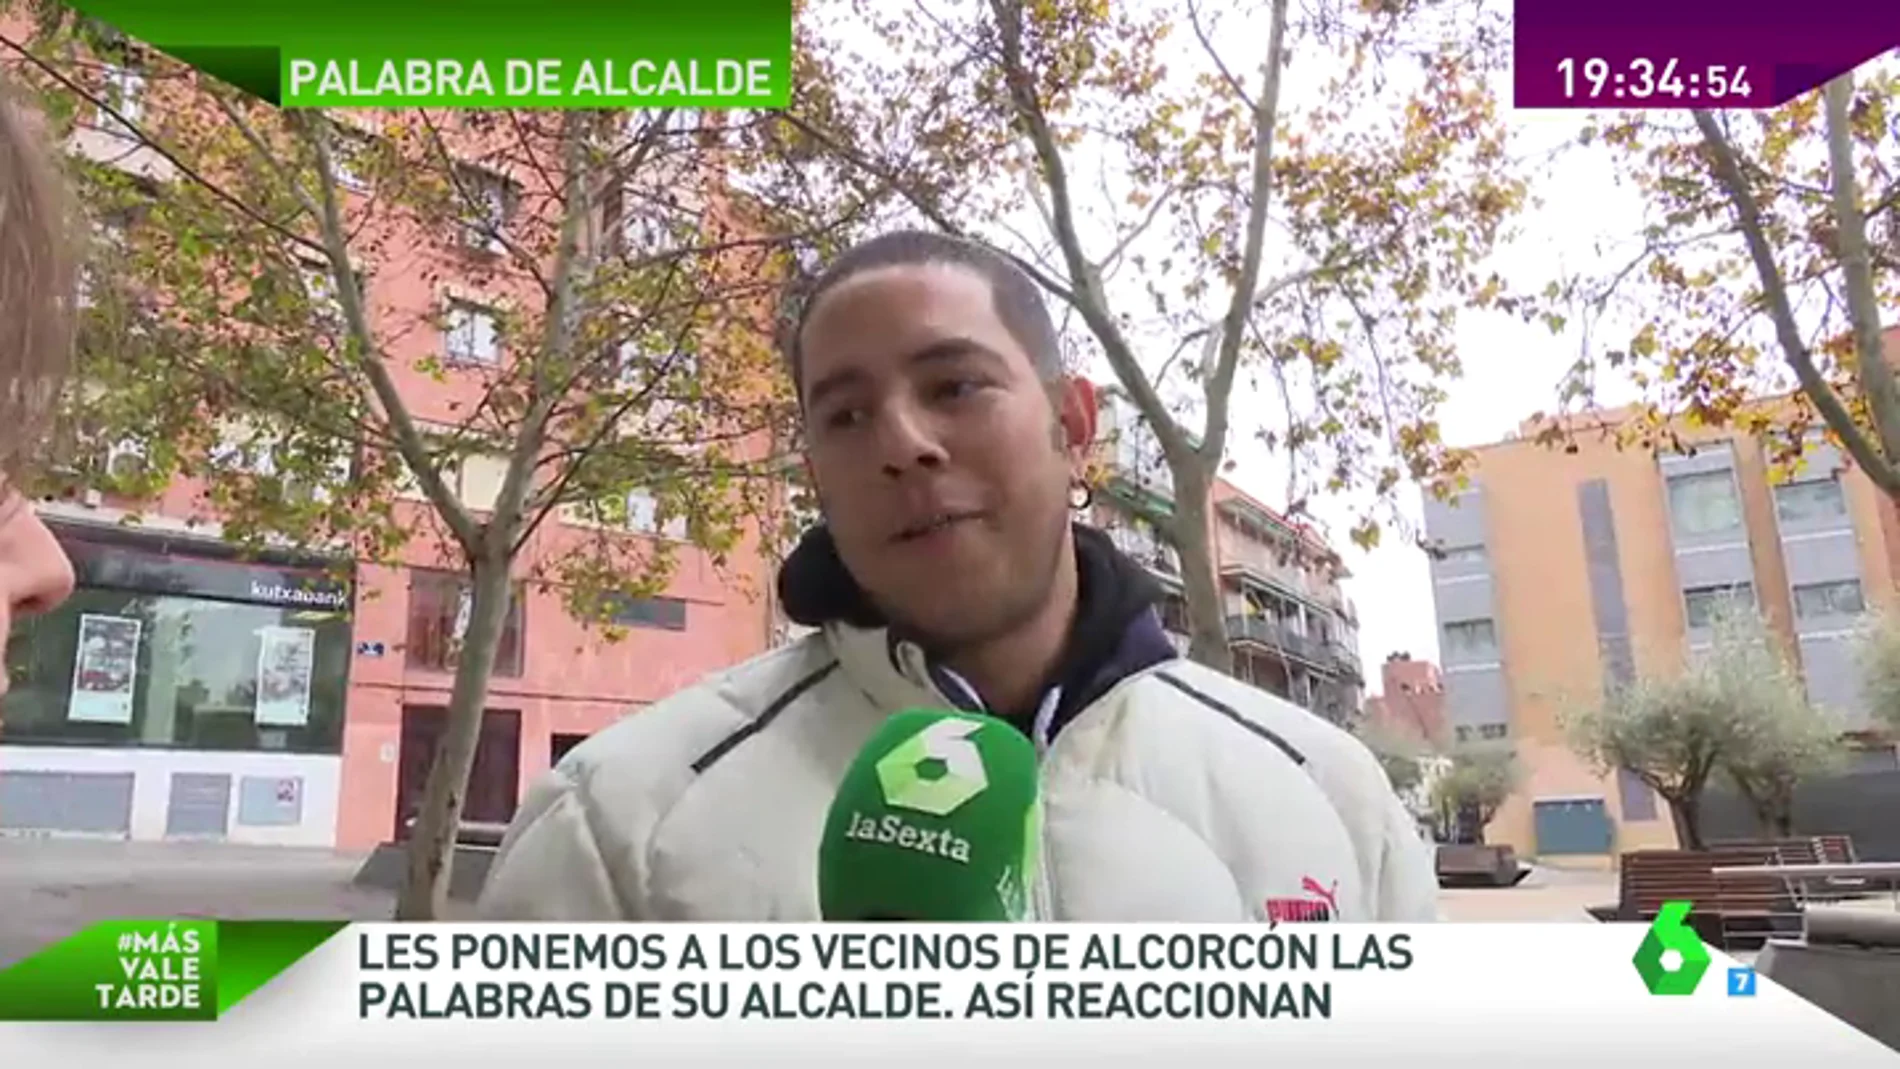 Frame 97.016569 de: Los vecinos de Alcorcón reaccionan a las palabras de su alcalde: "